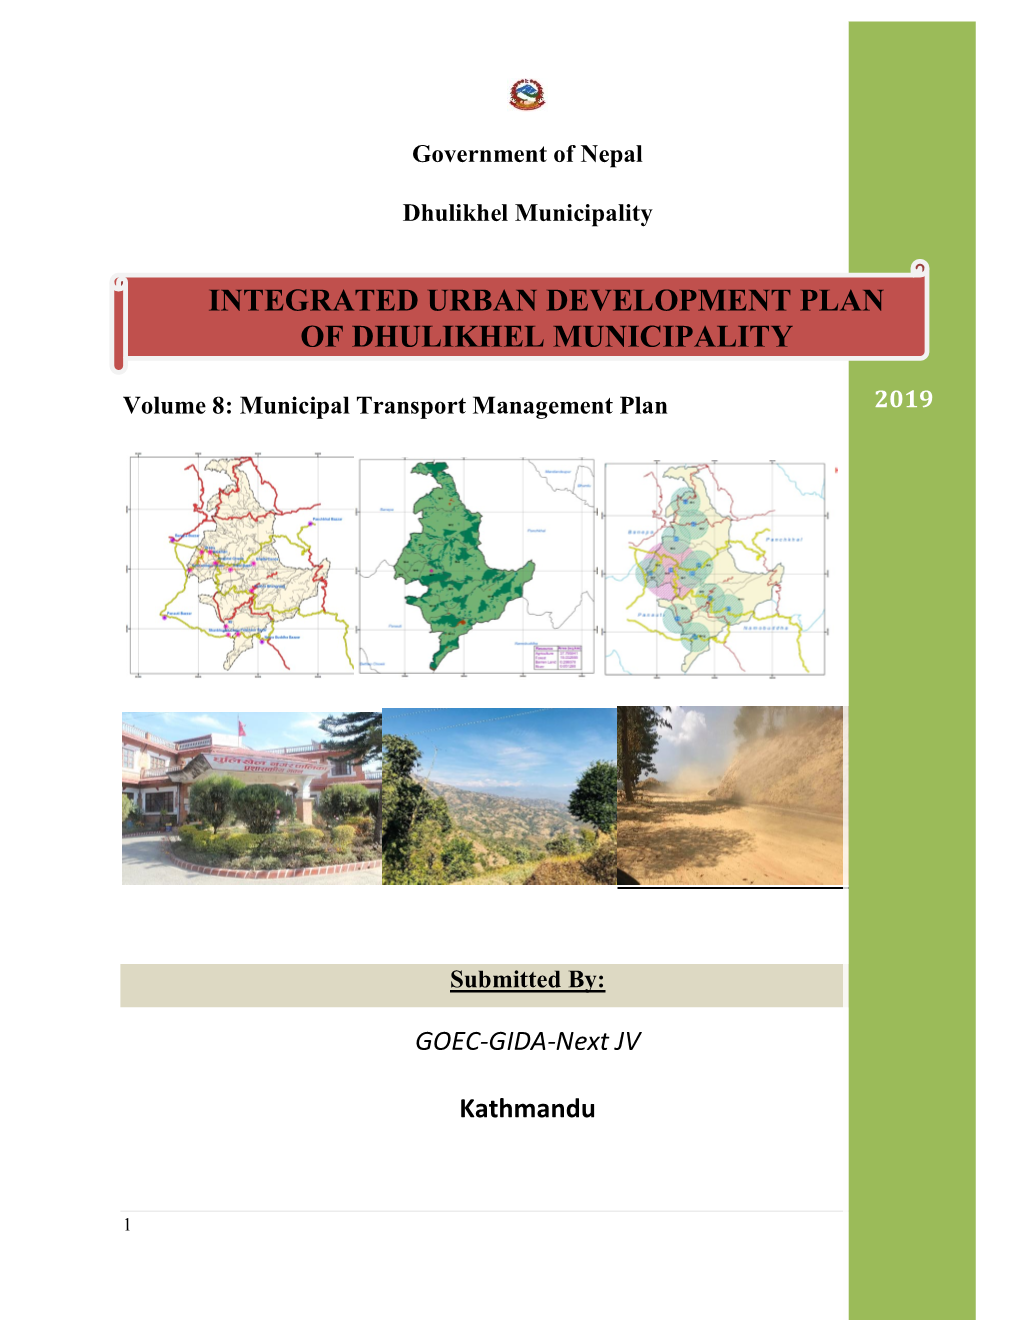 Integrated Urban Development Plan of Dhulikhel Municipality